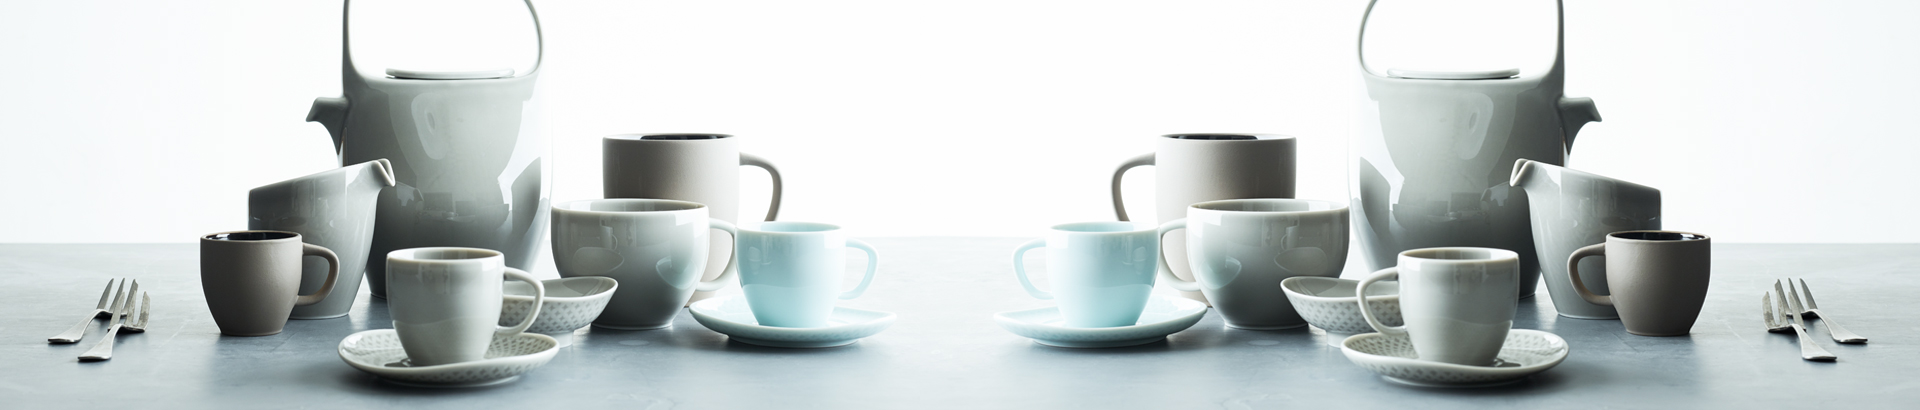 Coffee / Tea Cups & Mugs